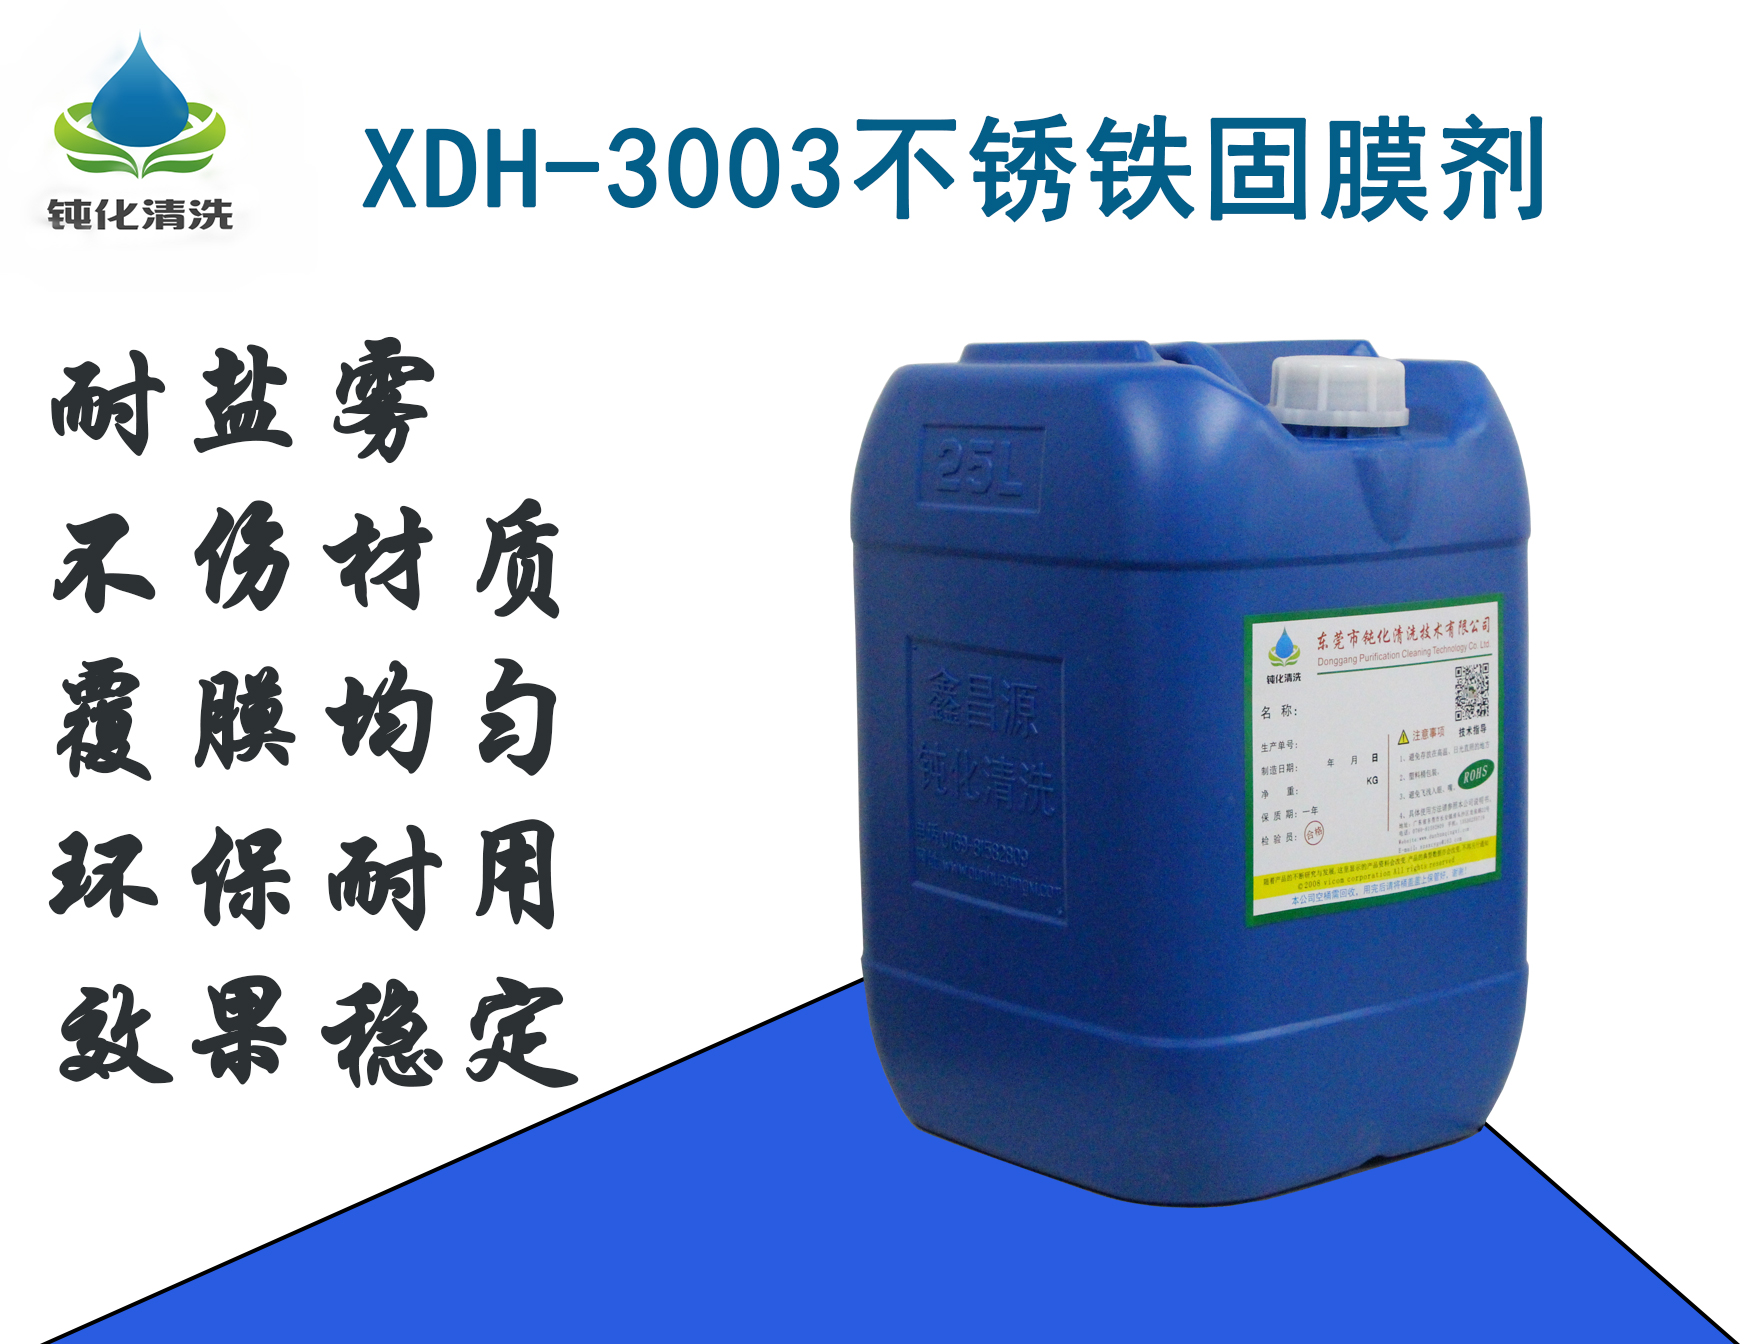 XDH-3003不锈铁固膜剂